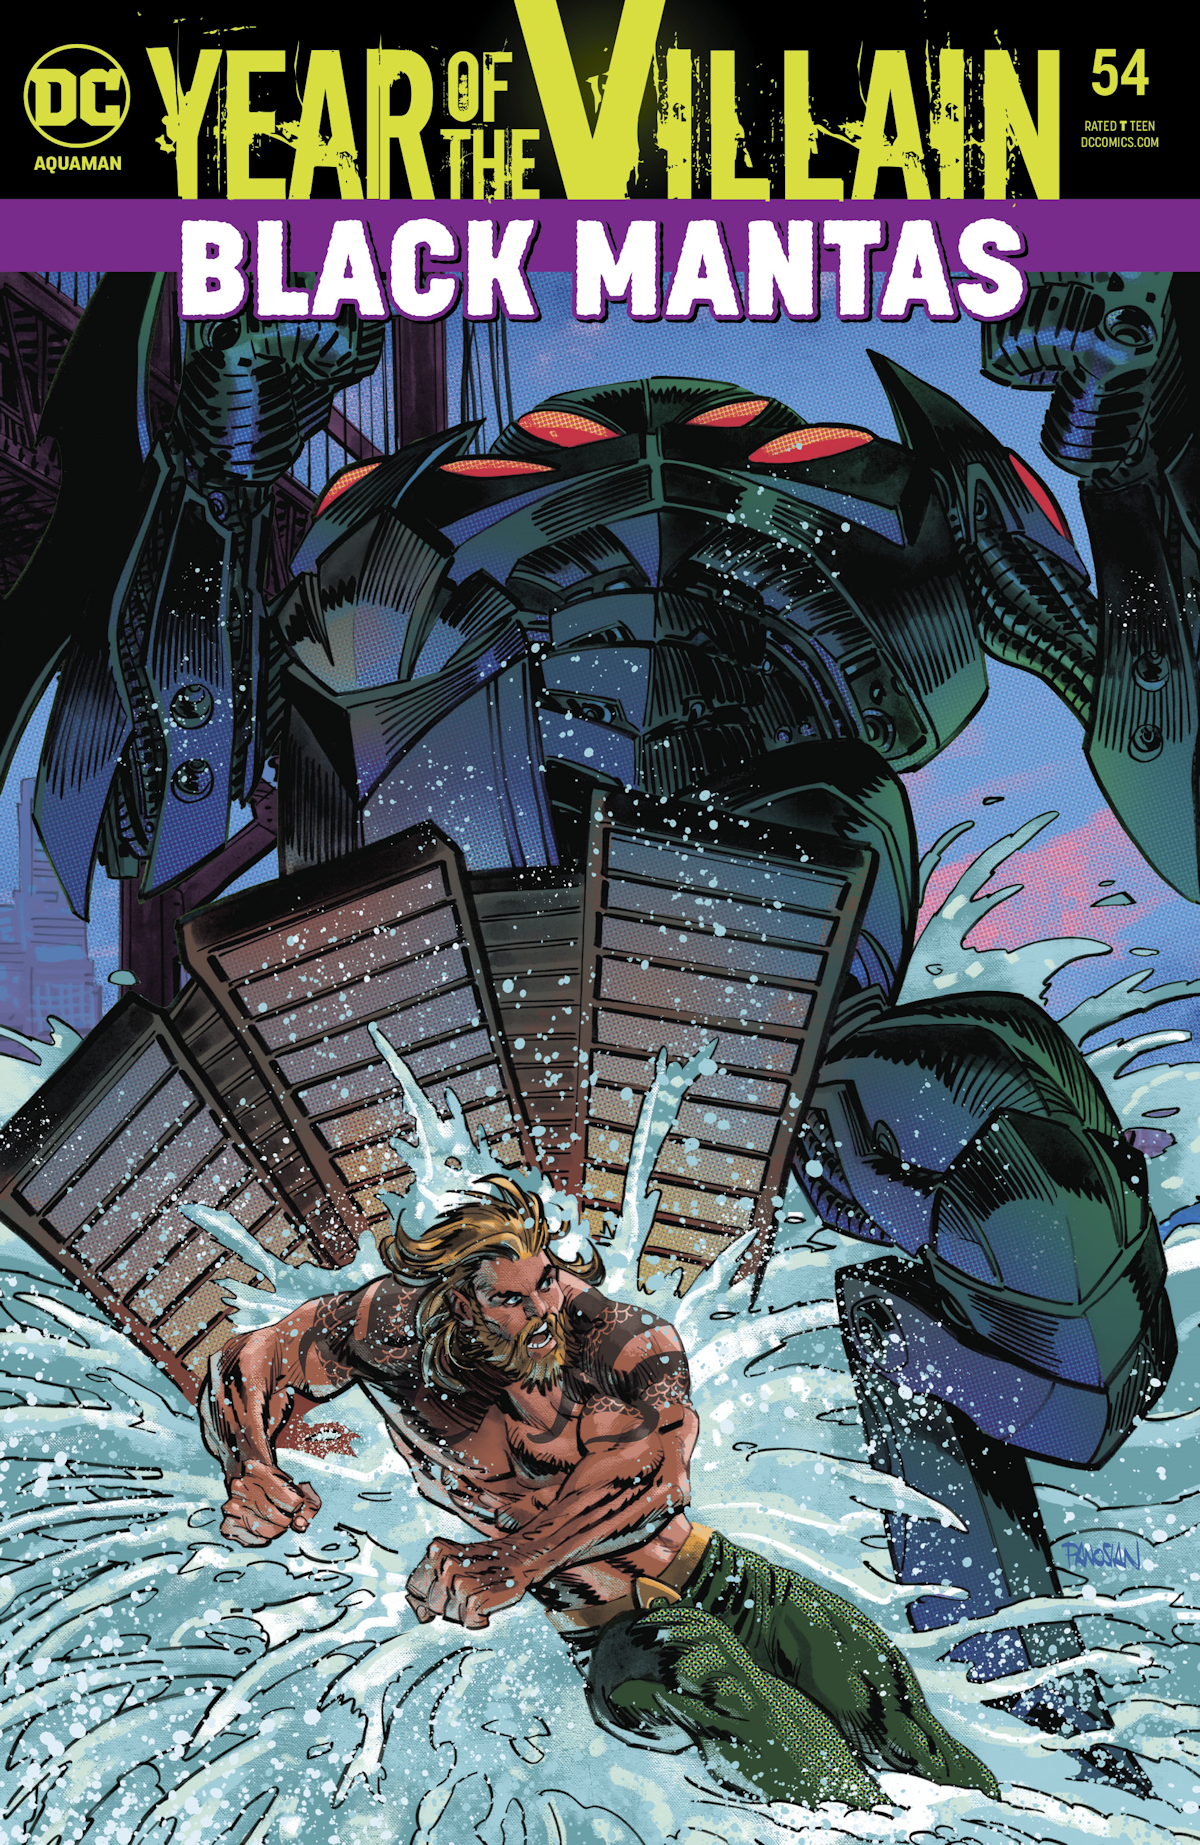 Aquaman Vol. 8 54 (Cover A)